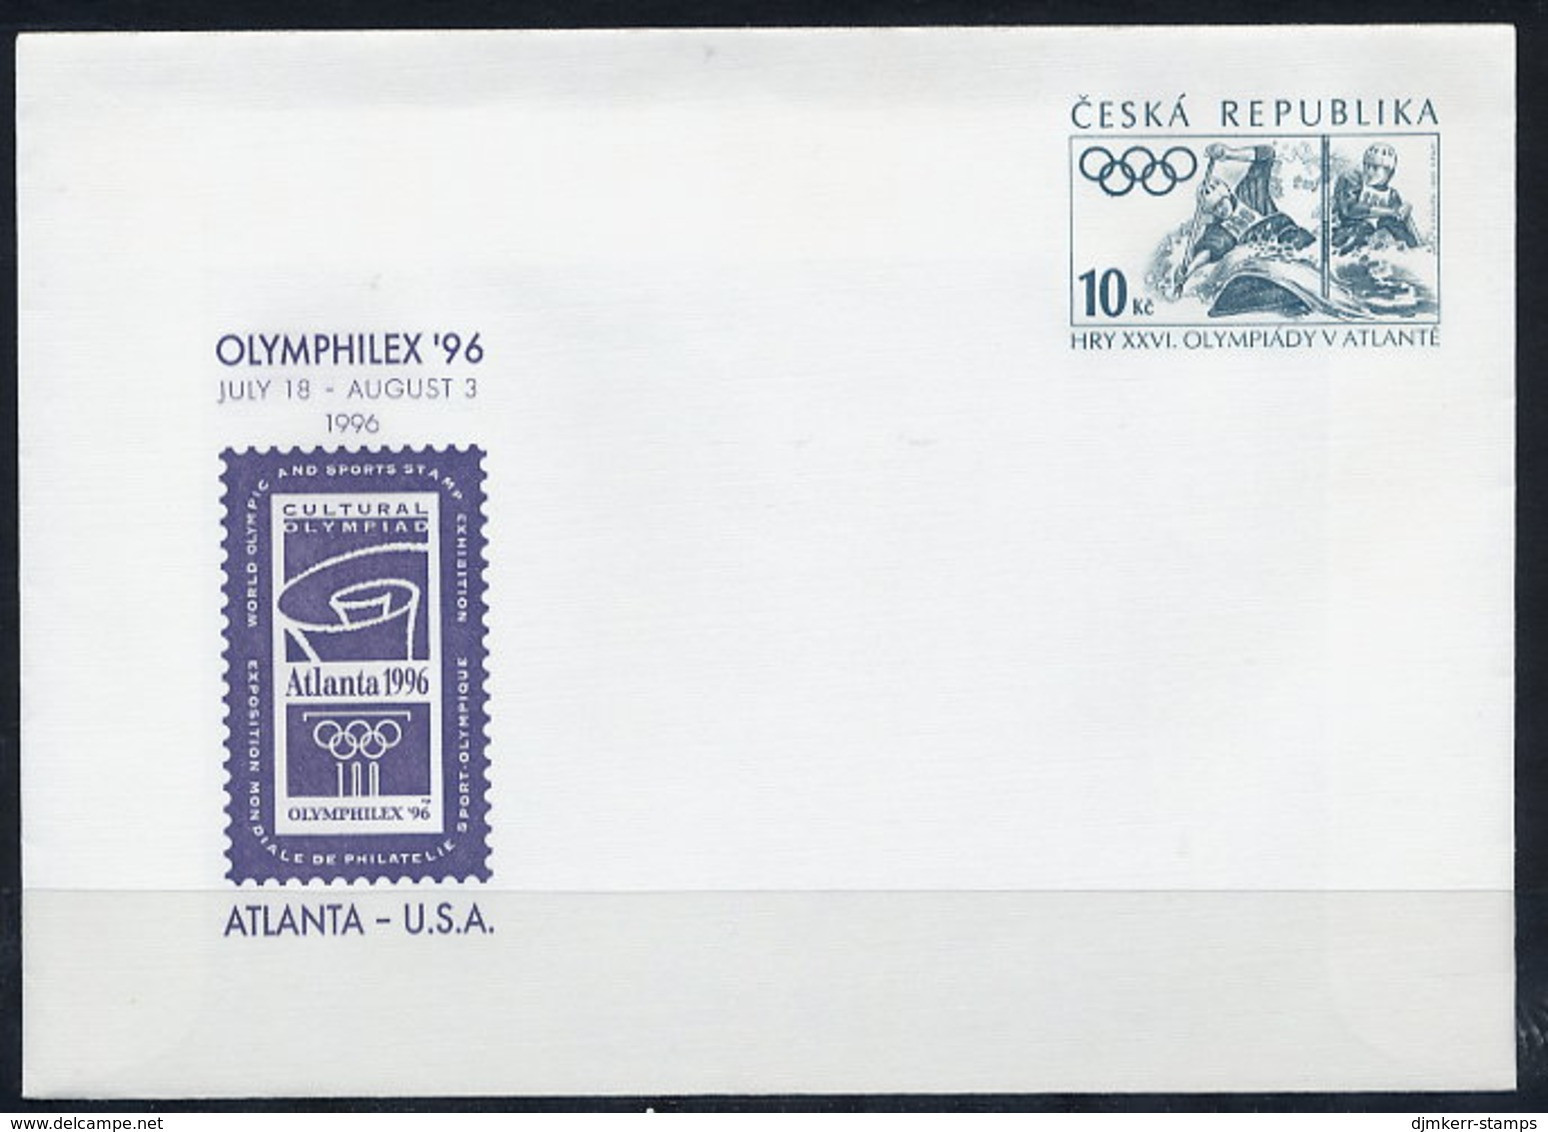 CZECH REPUBLIC 1996 10 Kc Envelope OLYMPHILEX '96 Unused.  Michel U3 - Omslagen